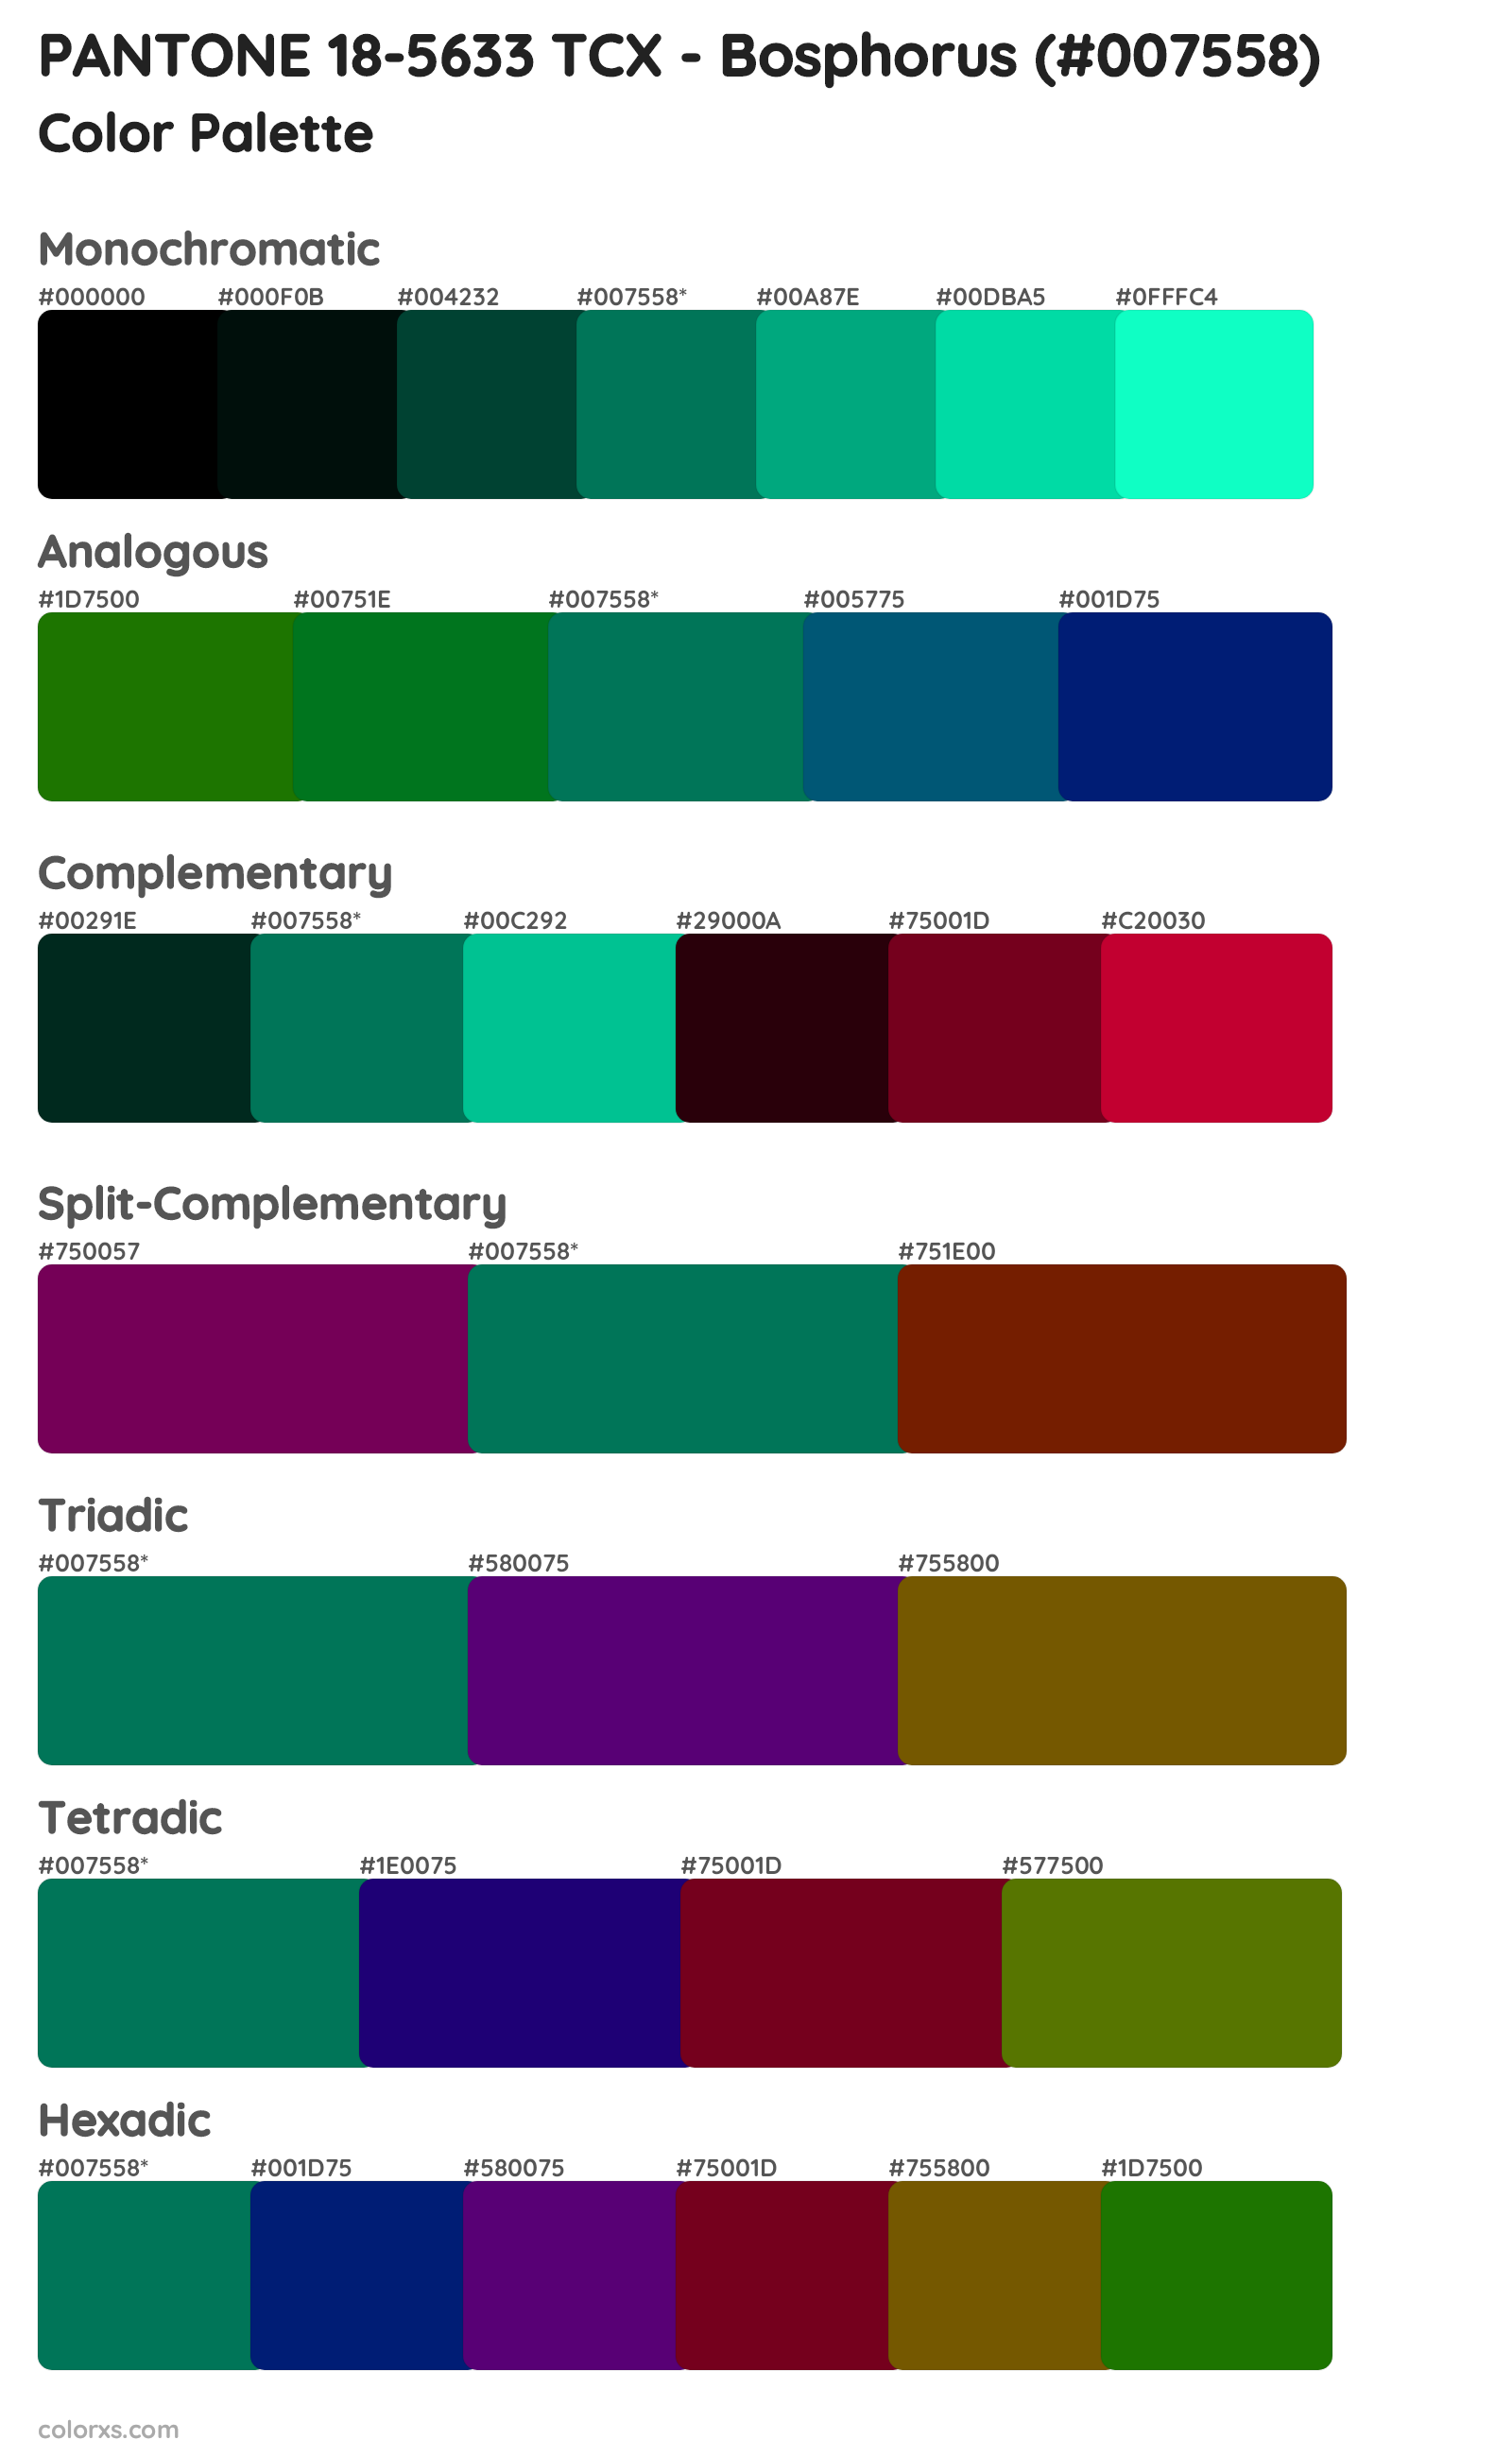 PANTONE 18-5633 TCX - Bosphorus Color Scheme Palettes